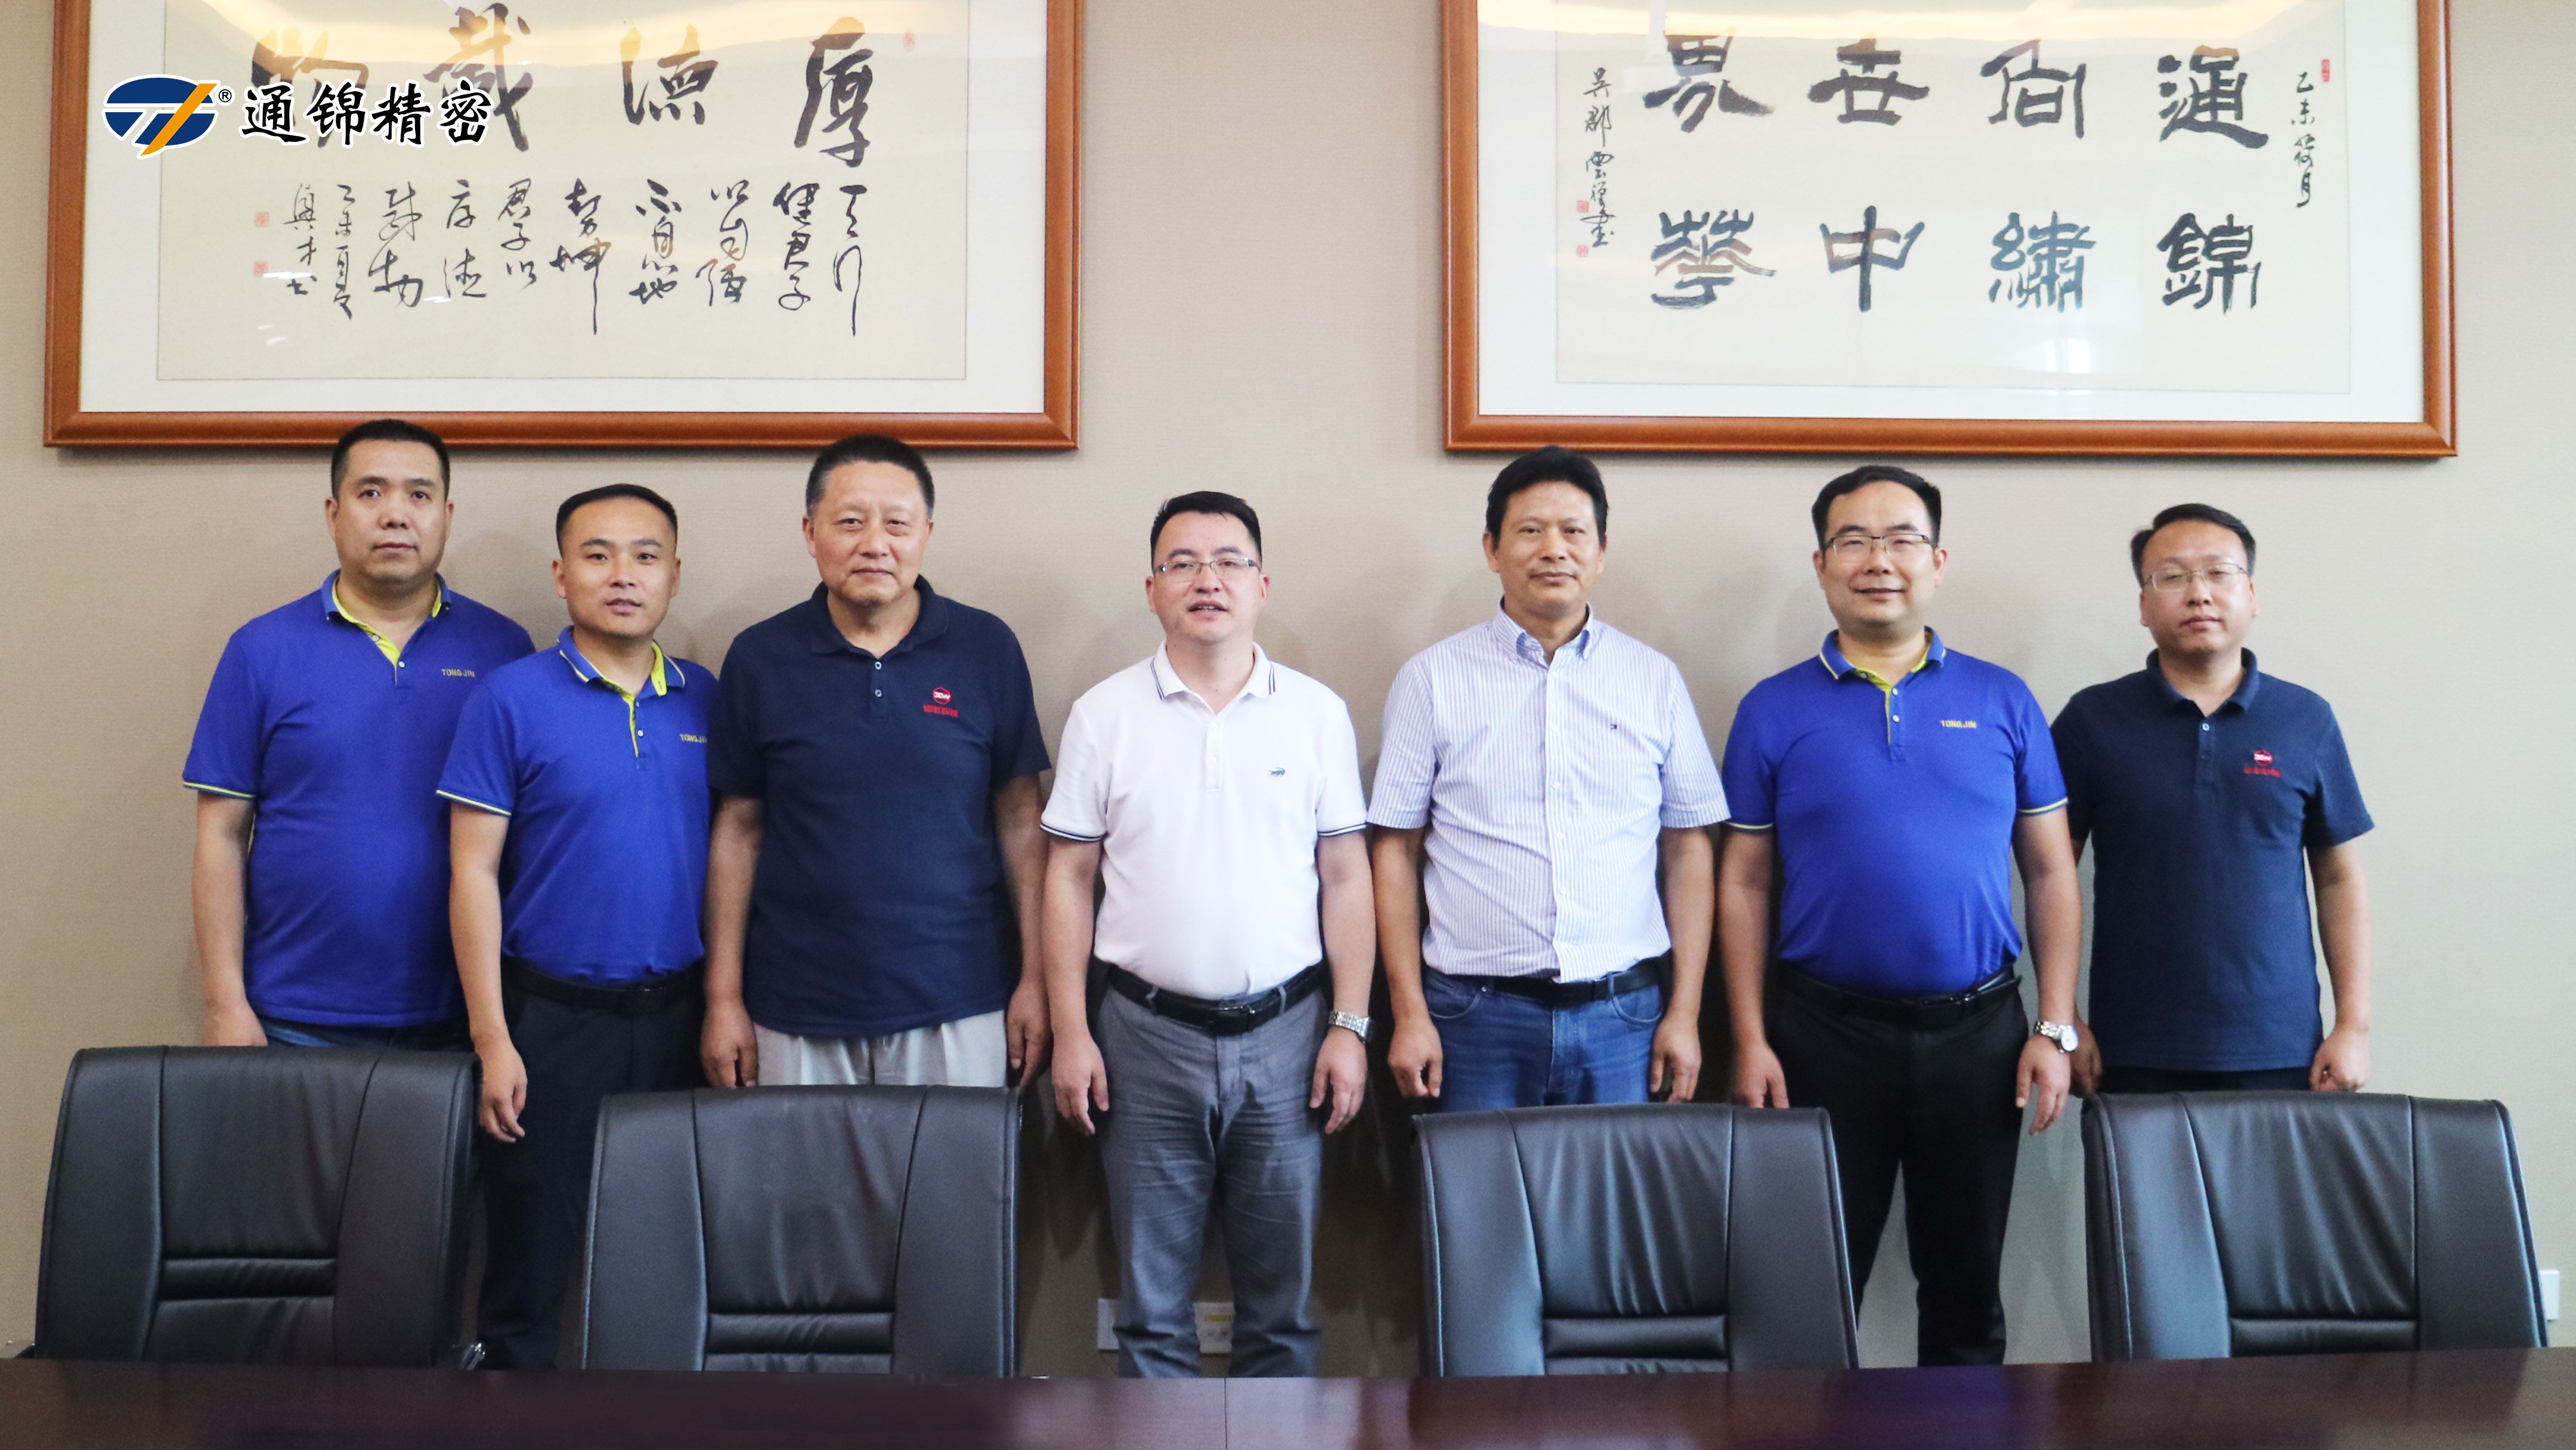 苏州通锦与合肥修武工业举行战略合作签约仪式